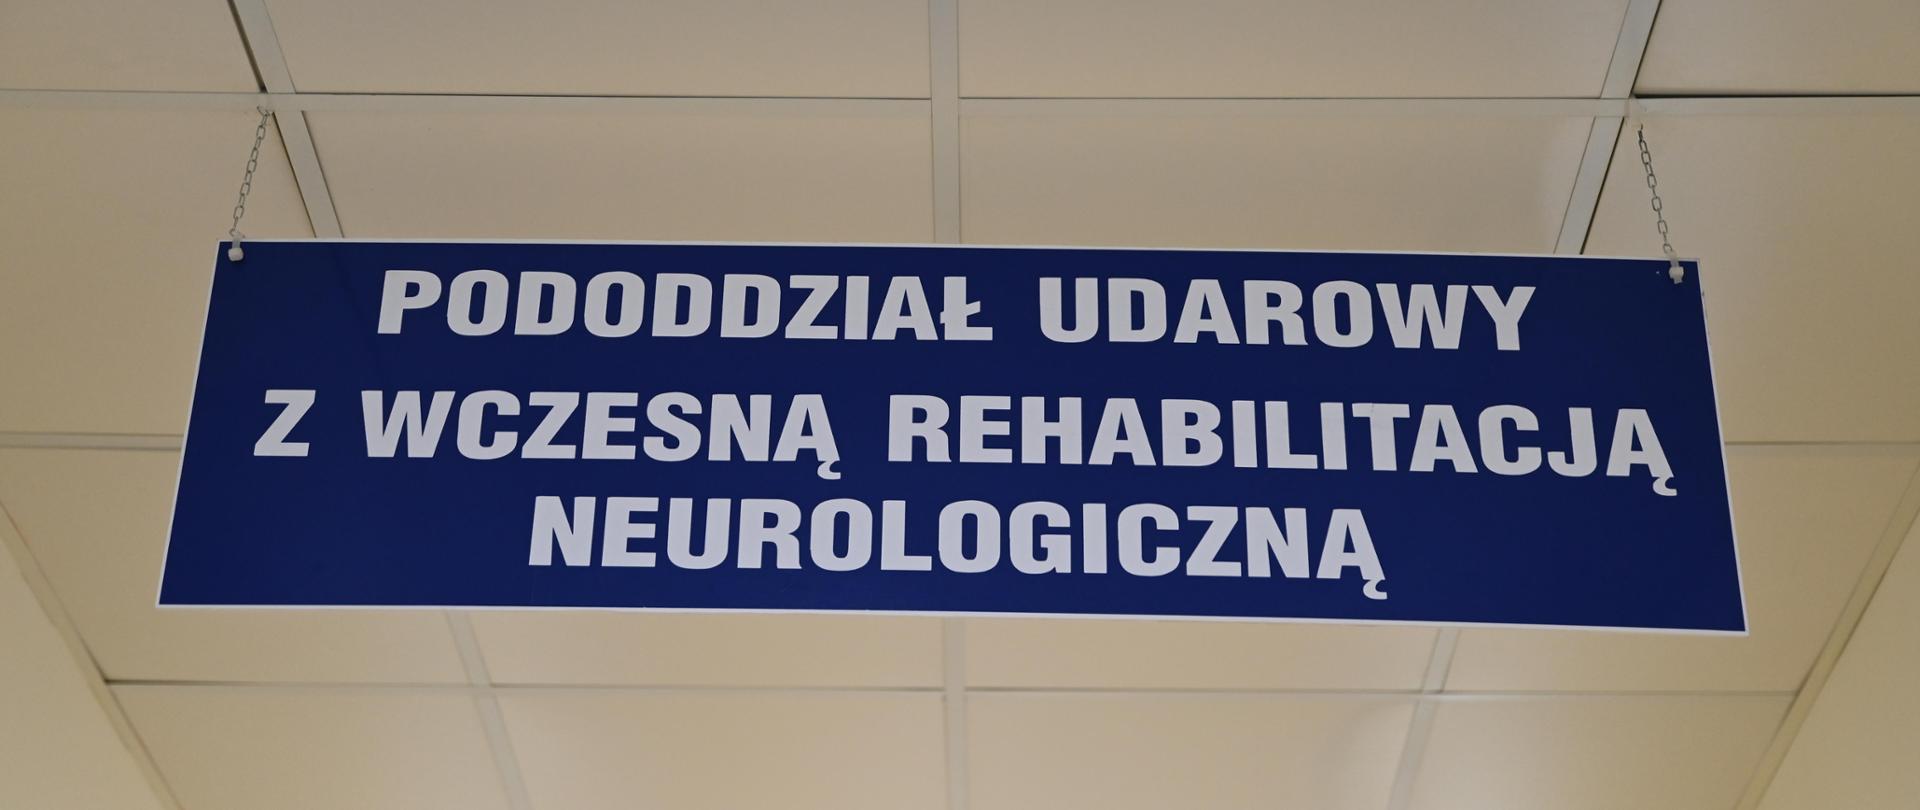 Tablica informacyjna - pododdział udarowy z wczesną rehabilitacją neurologiczną 